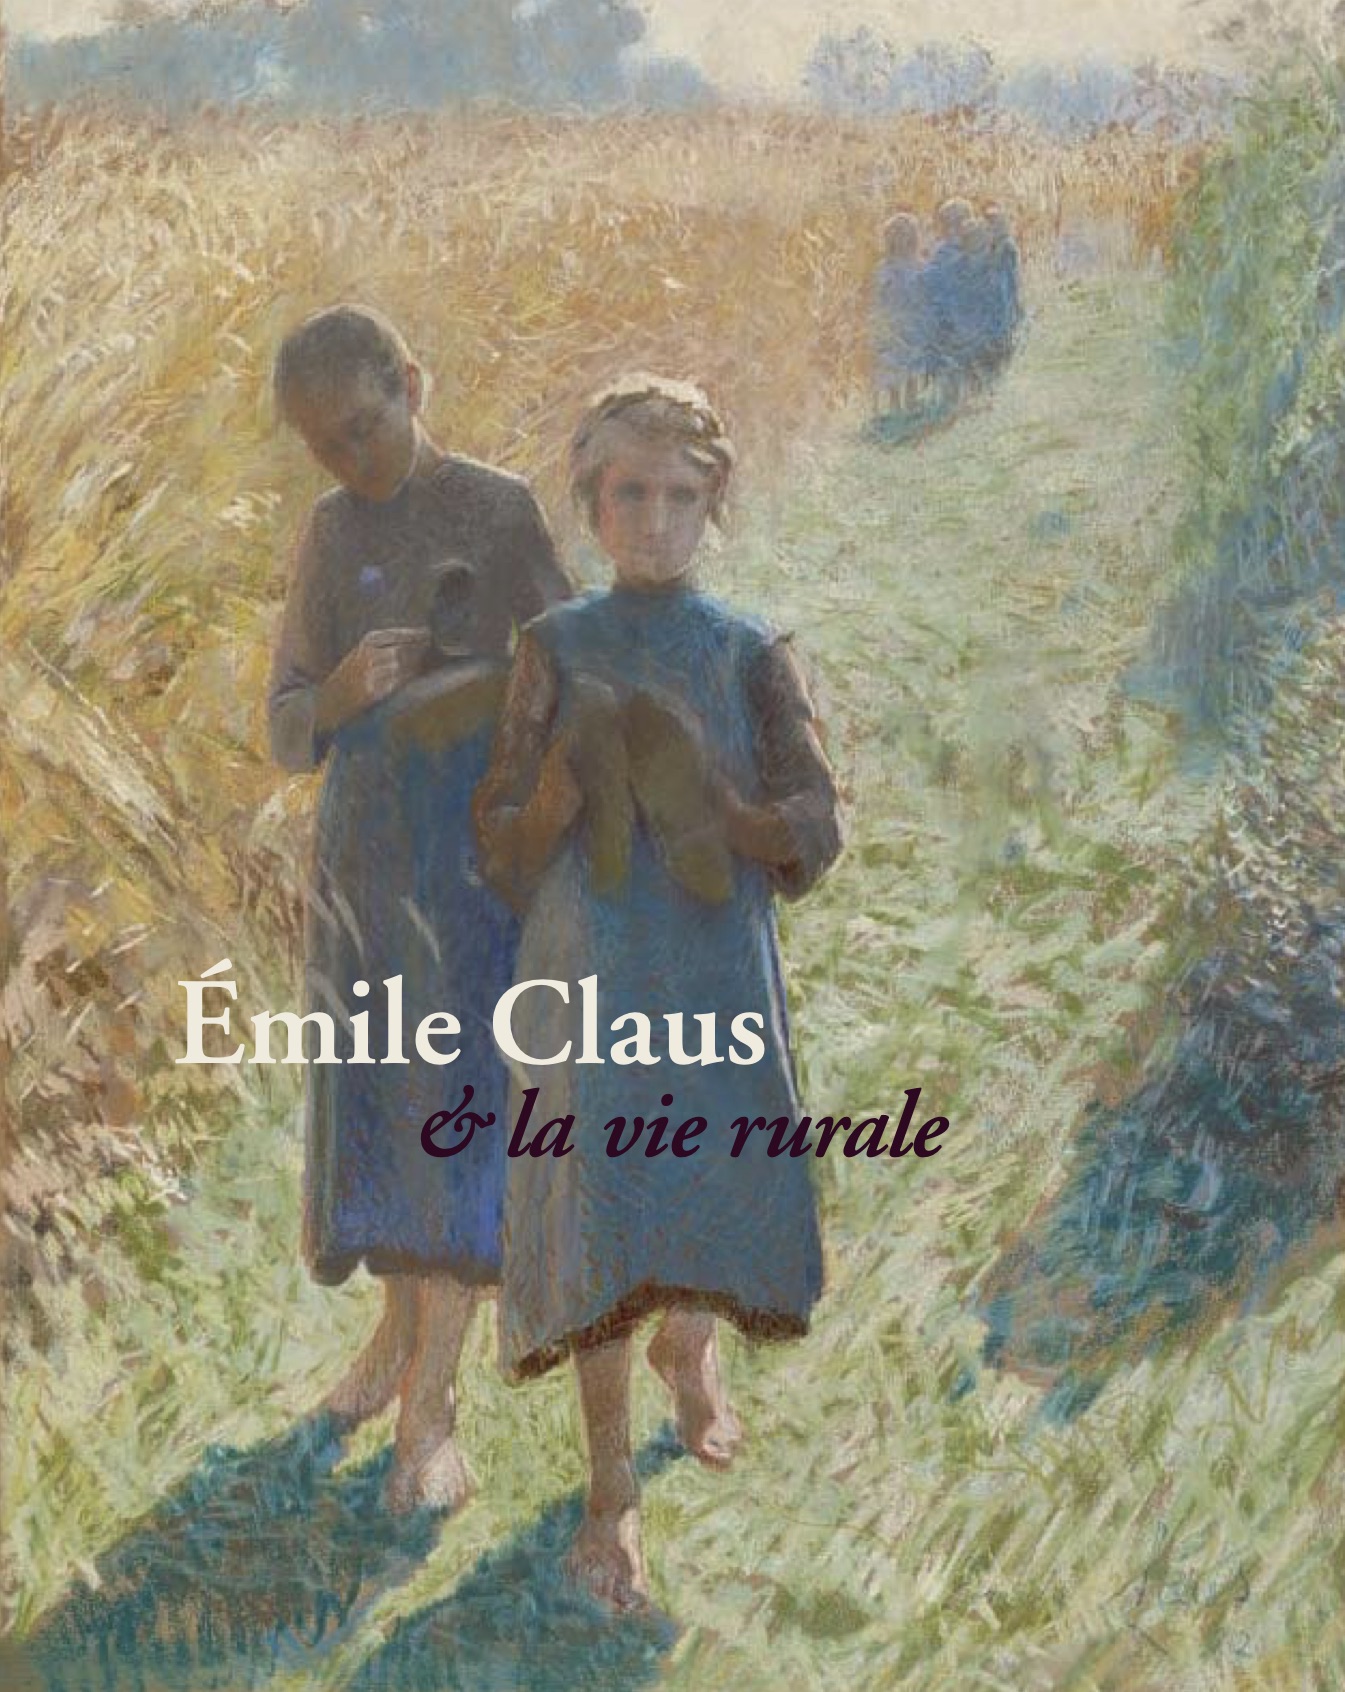 Emile Claus & la vie rurale cover